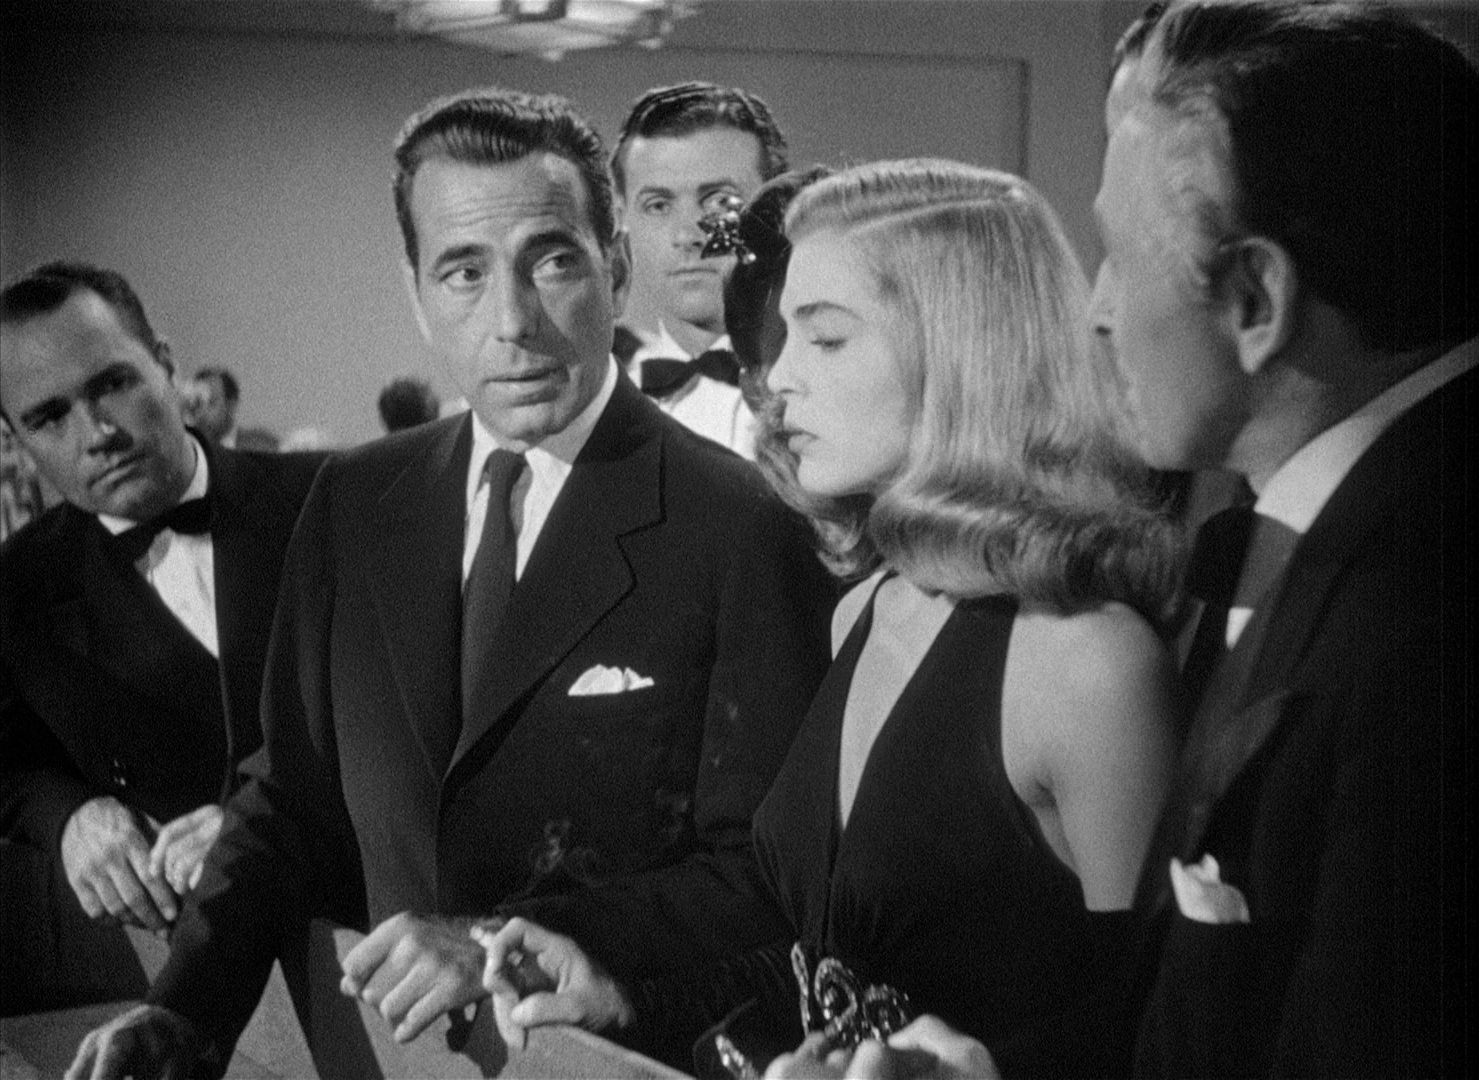 Schwarz-Weiß-Szene: Humphrey Bogart am Spieltisch mit aufmerksamem Blick zu einem Mann im Vordergrund, neben ihm Lizabeth Scott, allesamt in Abendgarderobe gekleidet.